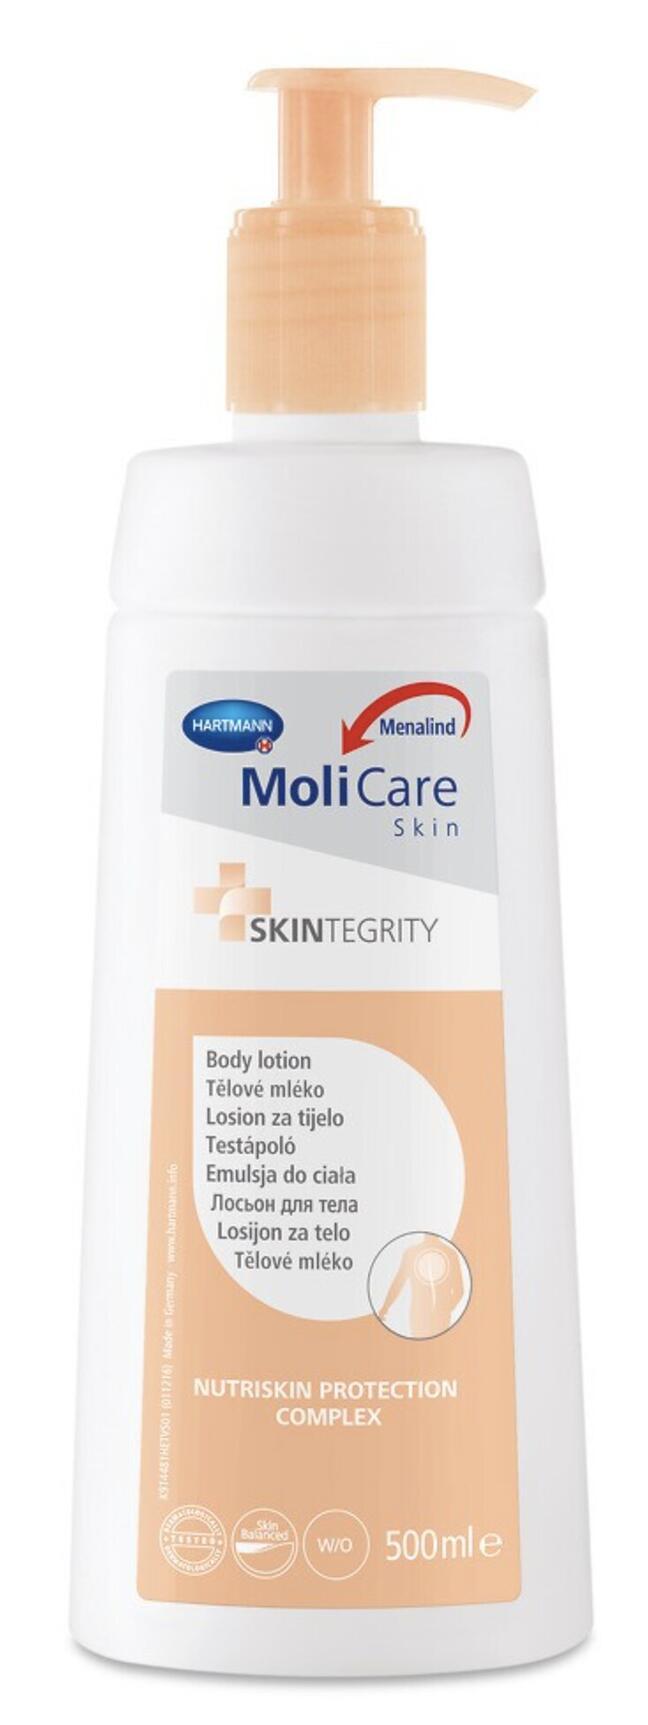 MoliCare Skin losjon za telo